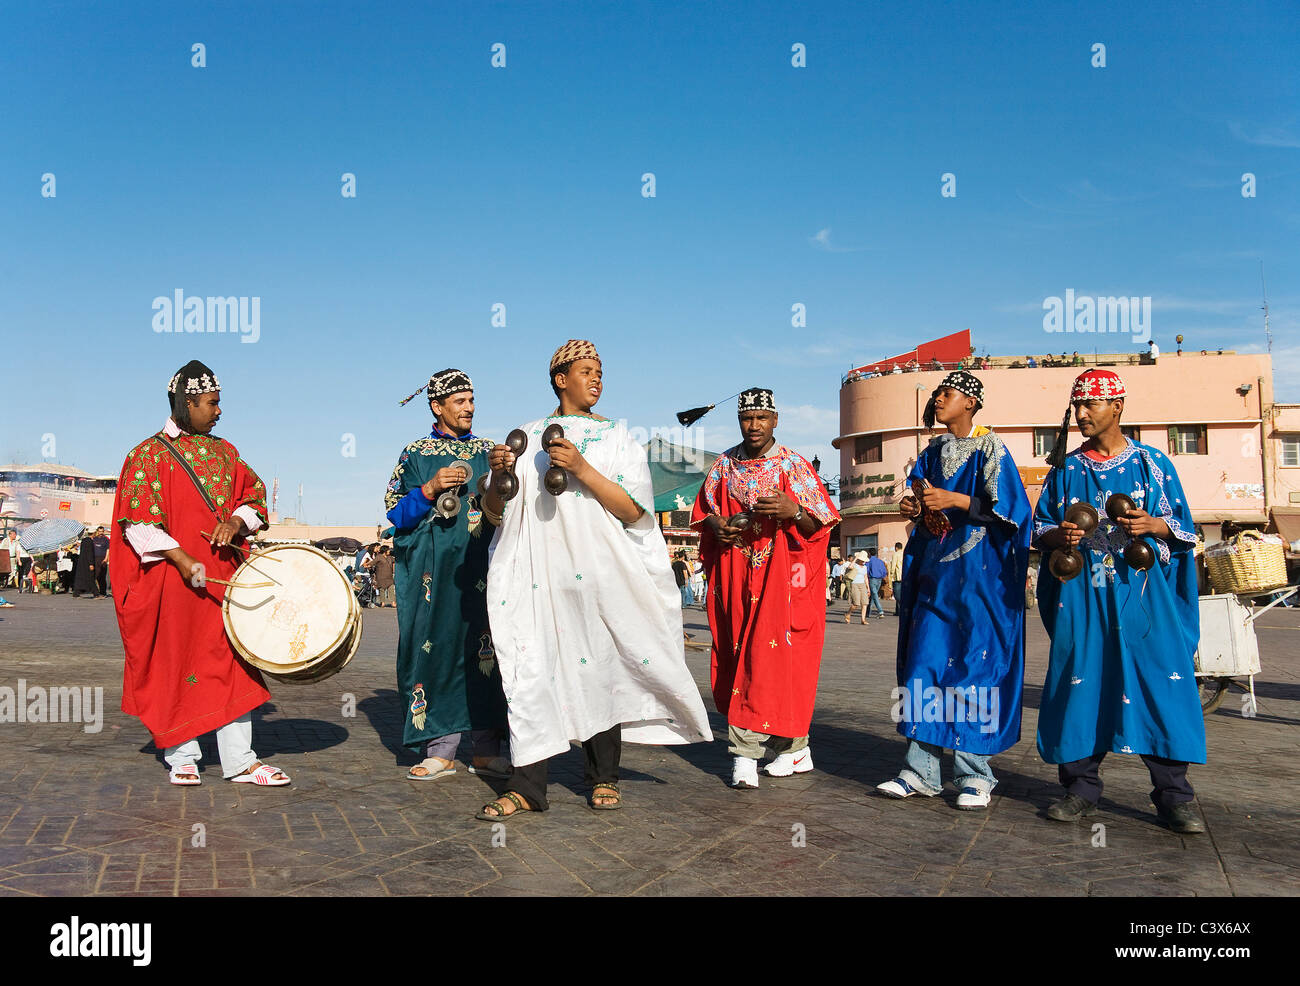 Musiker in traditioneller Kleidung unterhalten Touristen und Einheimische auf dem Marktplatz Djemaa el Fna. Marrakesch, Marokko. Stockfoto